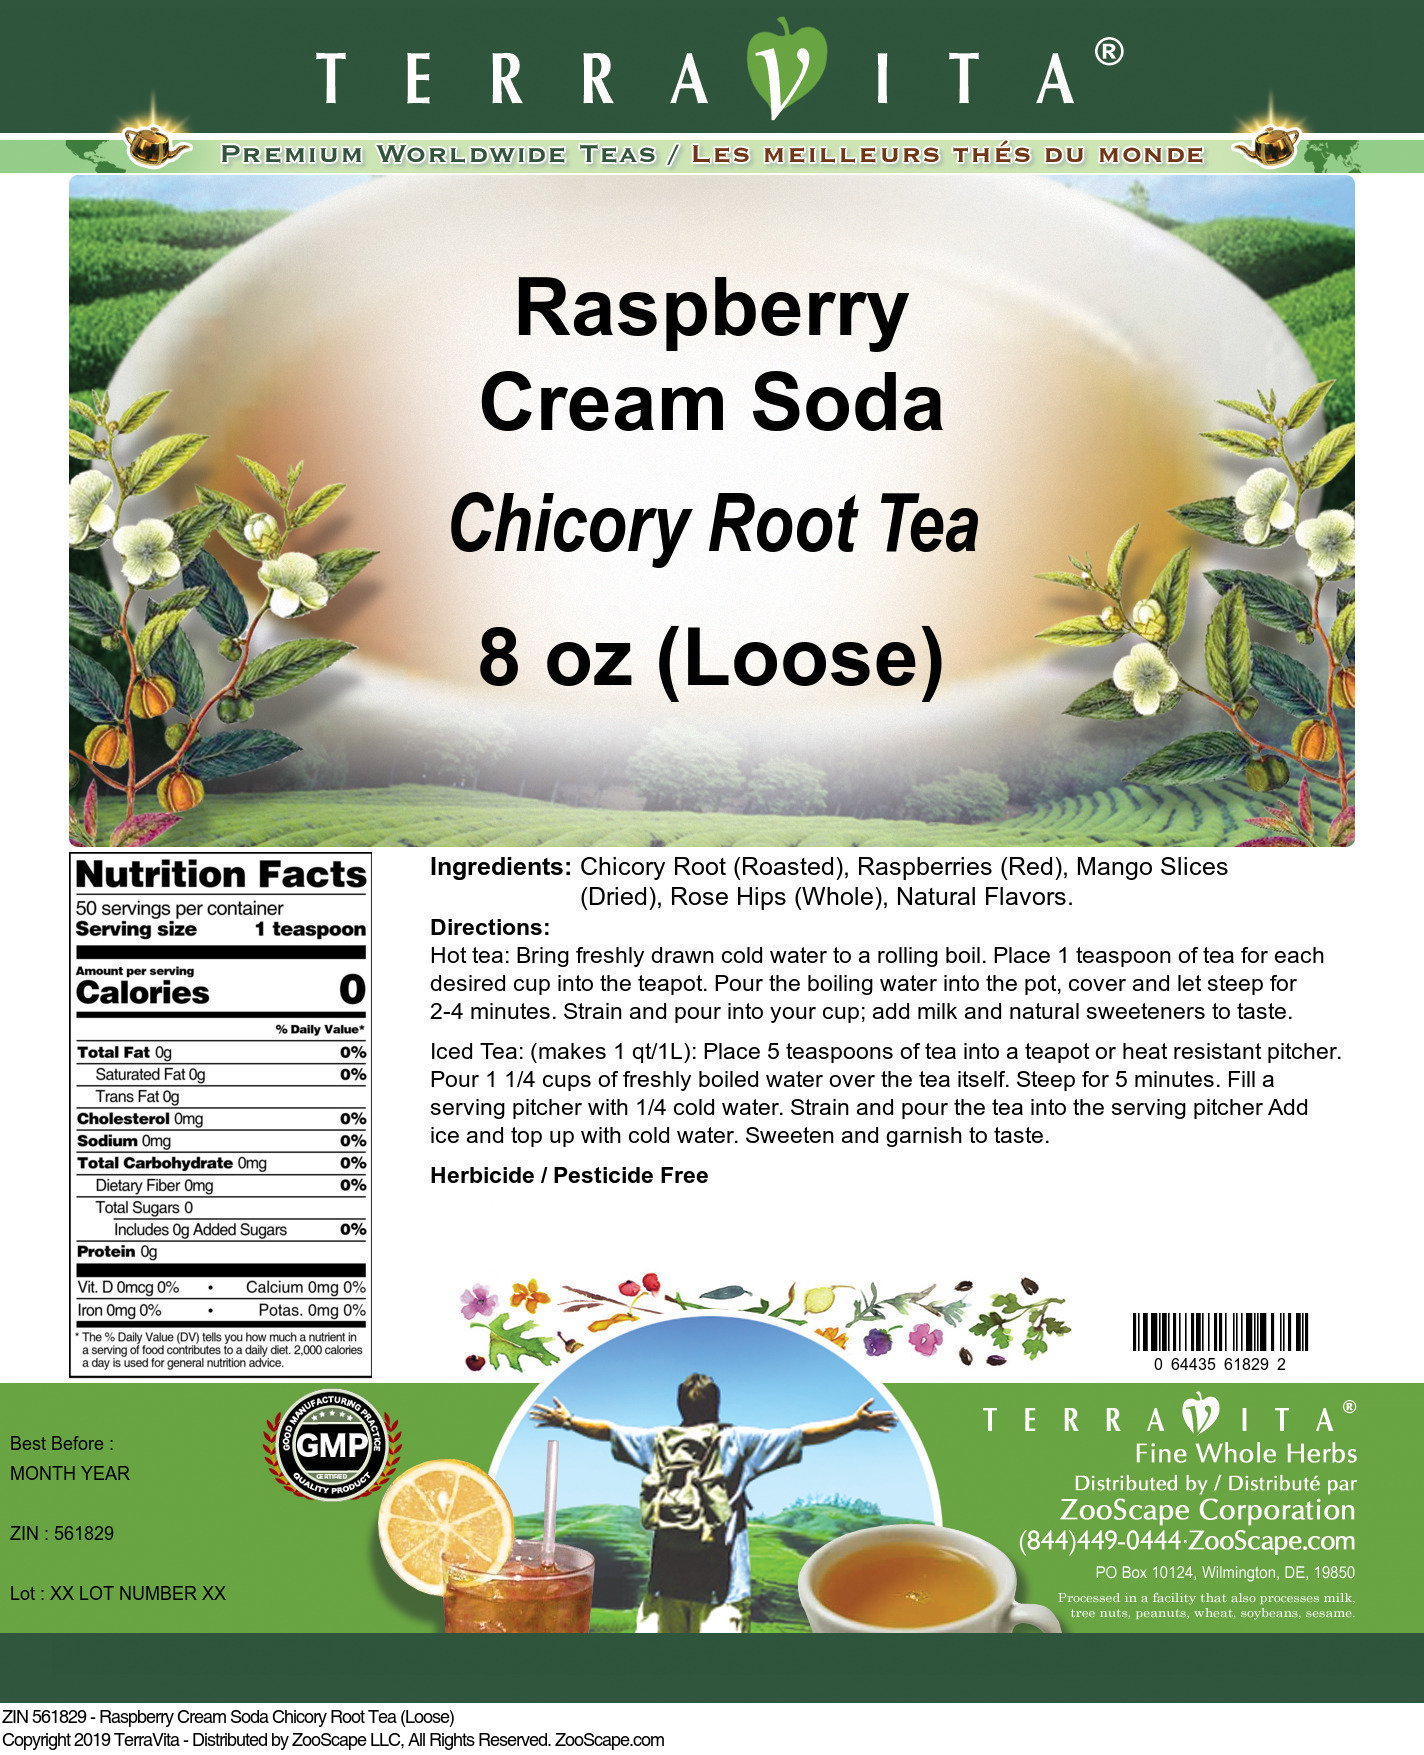 Raspberry Cream Soda Chicory Root Tea (Loose) - Label